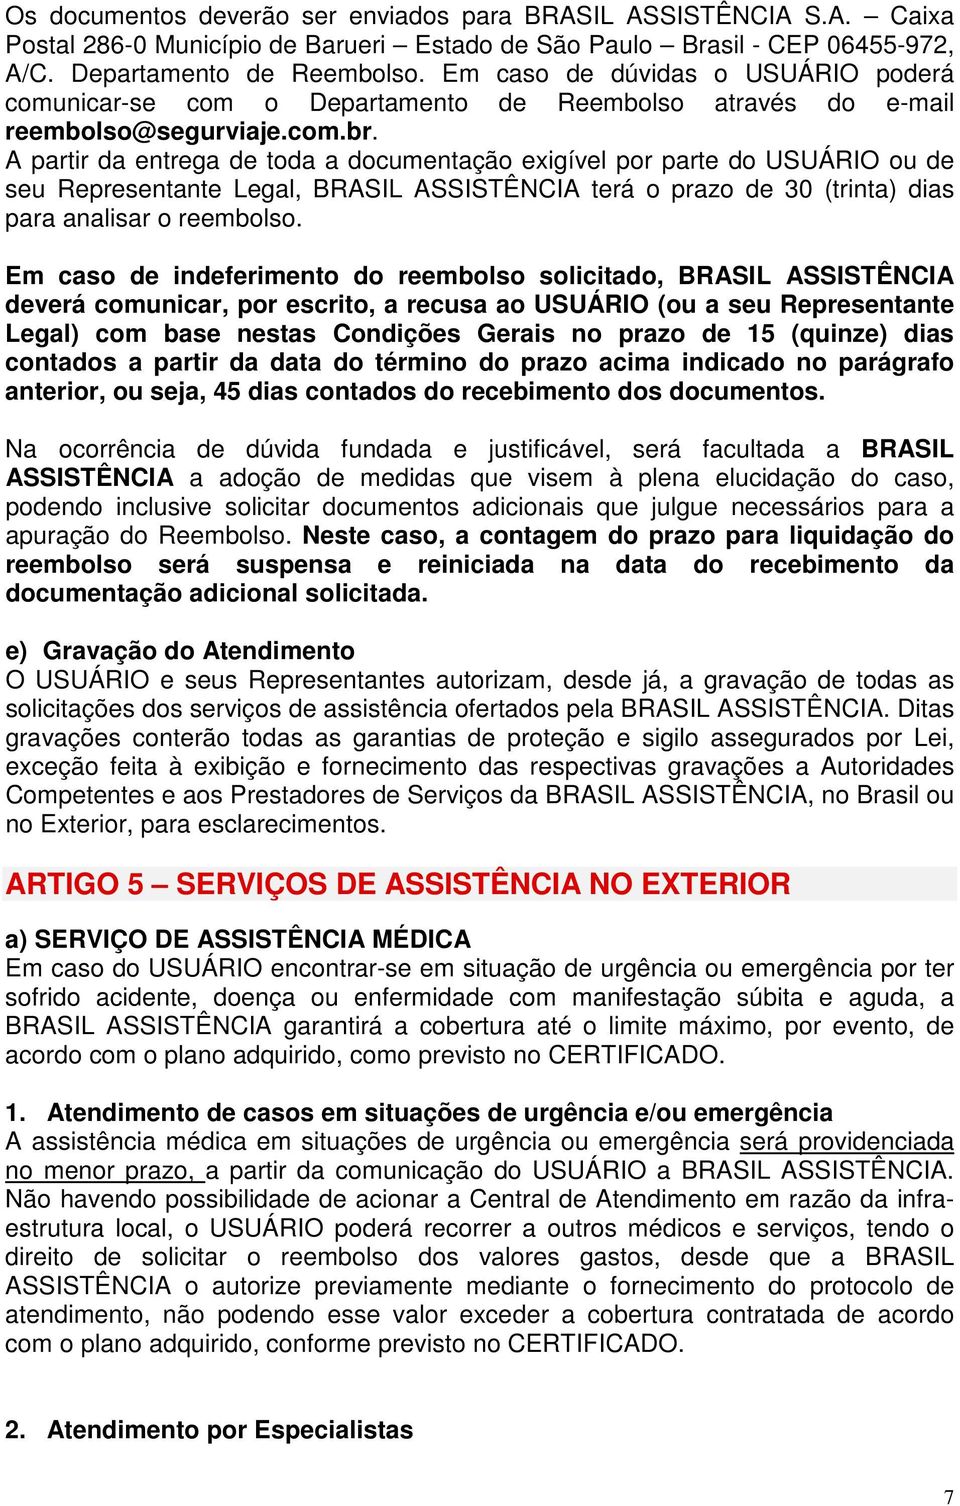 A partir da entrega de toda a documentação exigível por parte do USUÁRIO ou de seu Representante Legal, BRASIL ASSISTÊNCIA terá o prazo de 30 (trinta) dias para analisar o reembolso.